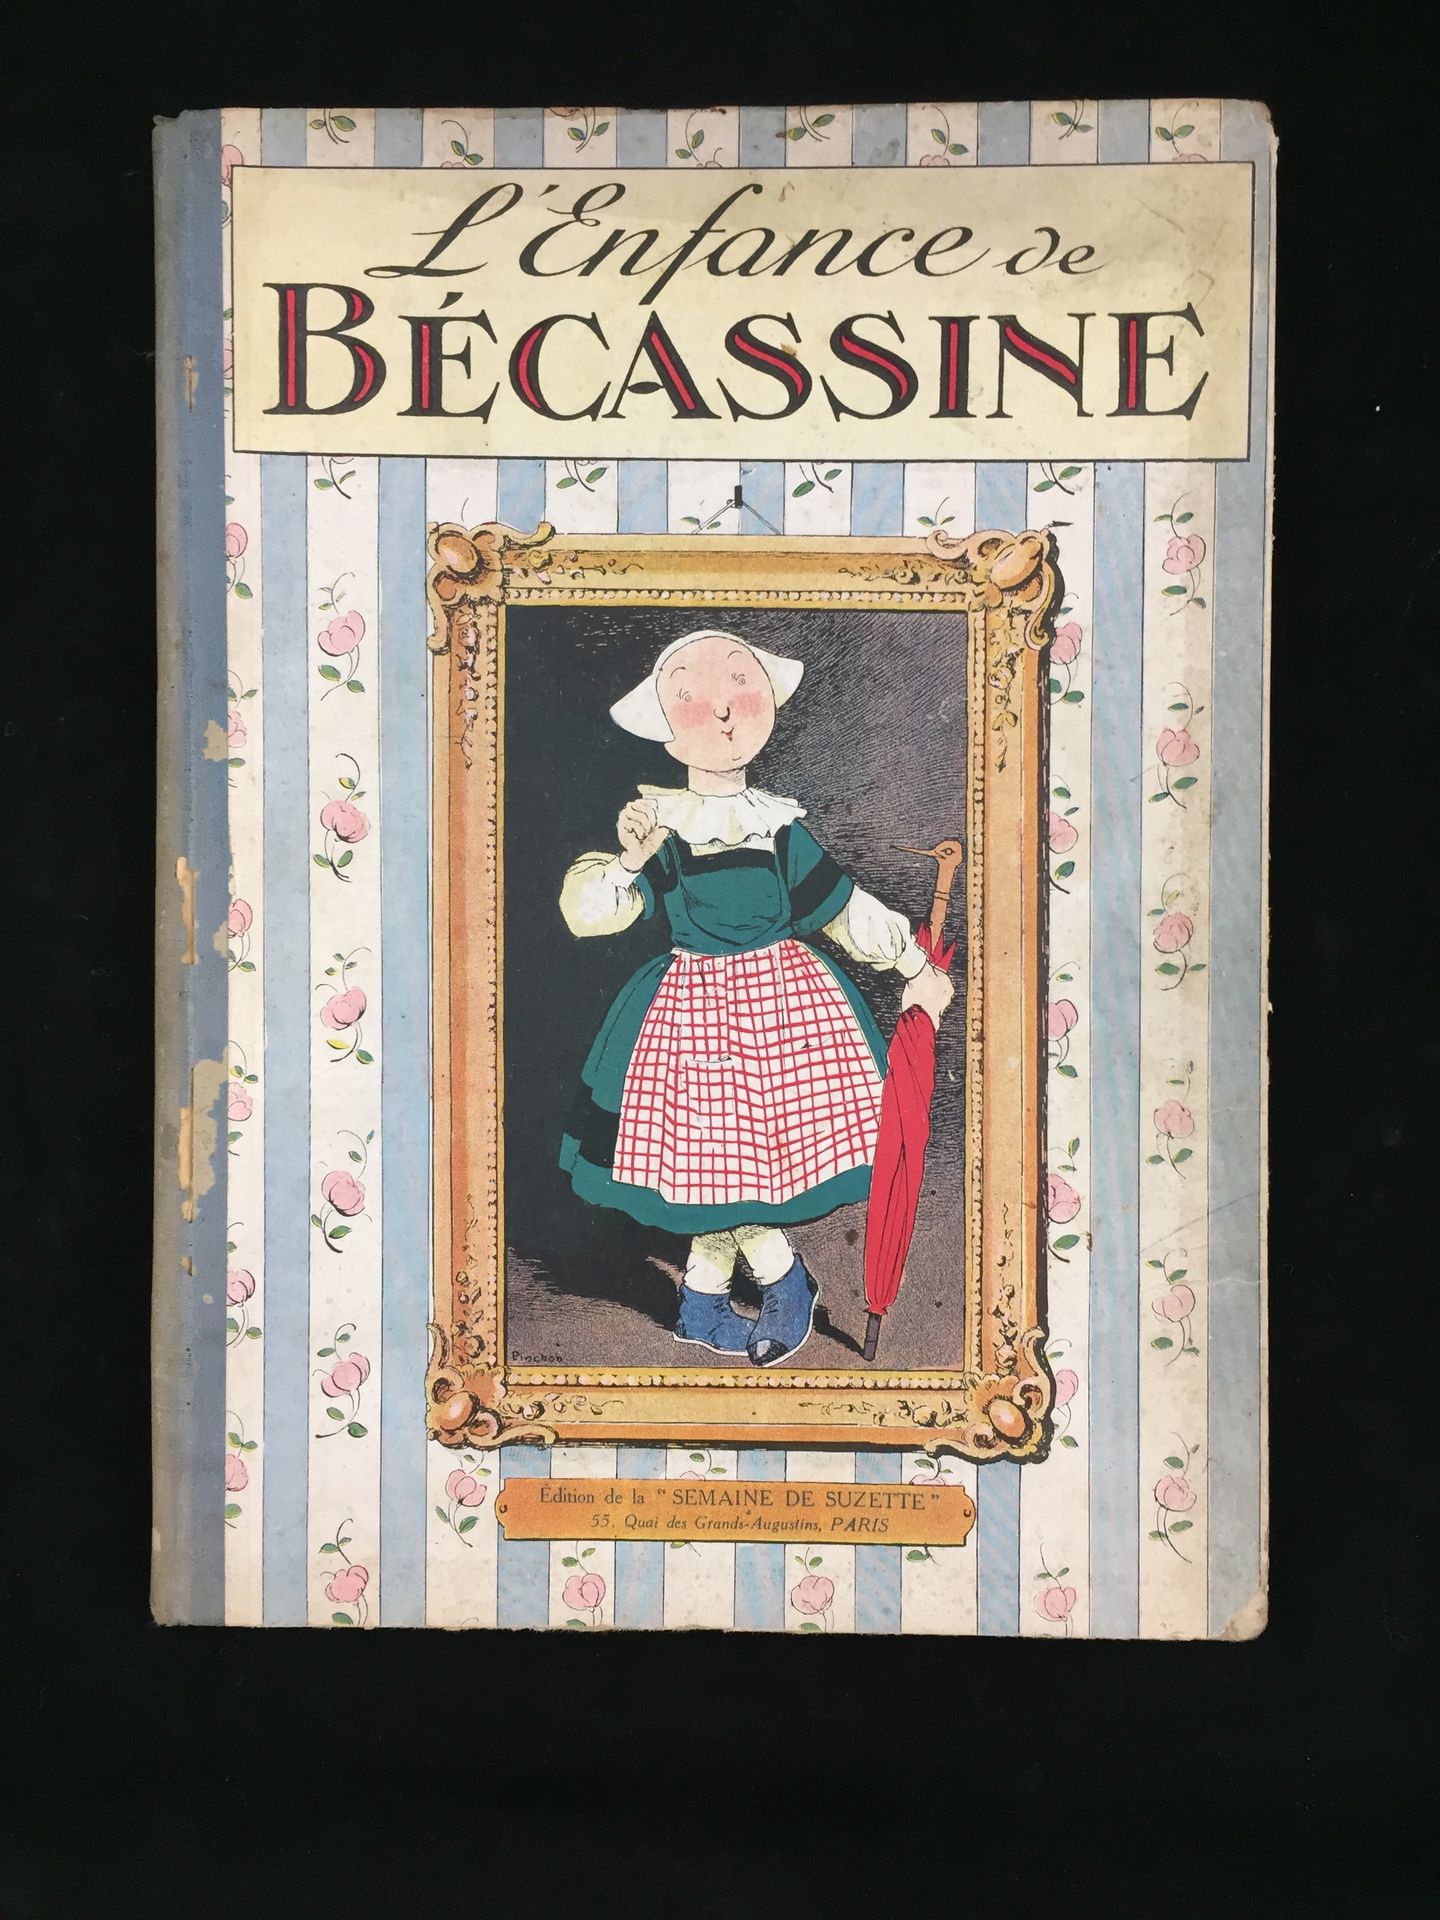 Null The childhood of Bécassine, Ed. Of "La Semaine de Suzette", 55, quai des Au&hellip;